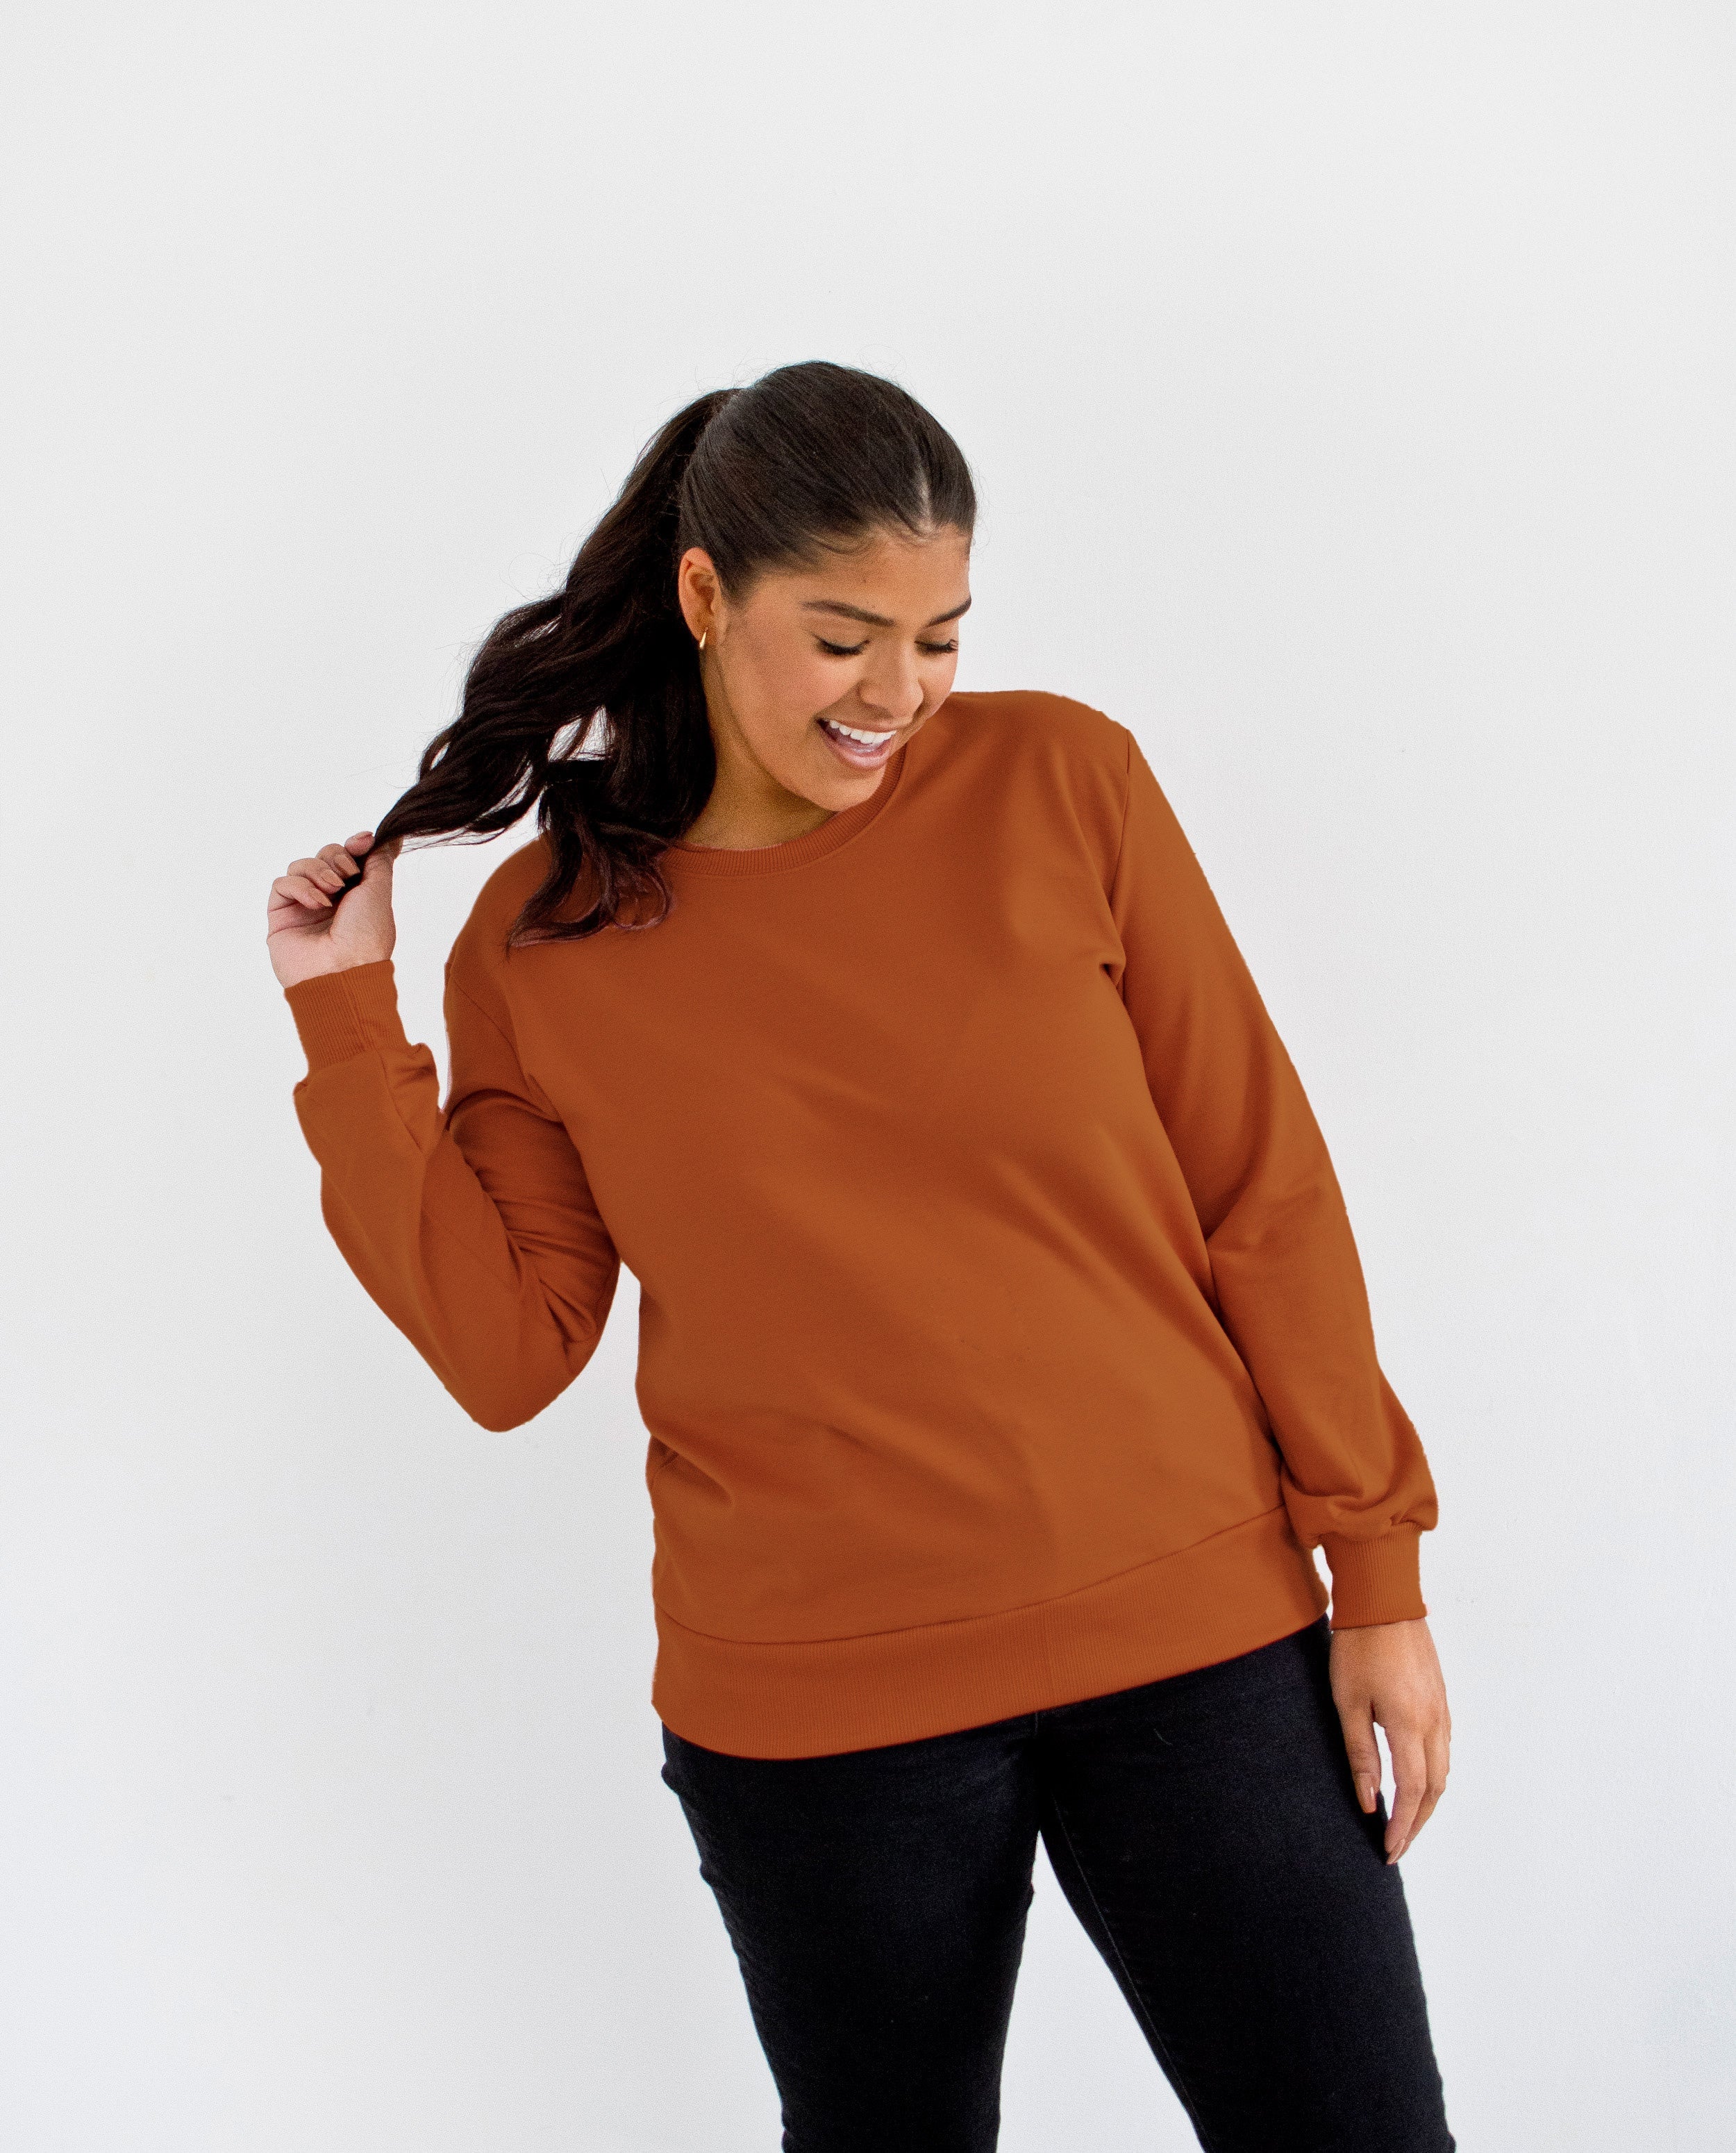 The Crewneck Sweatshirt | FRANC Sustainable Clothing